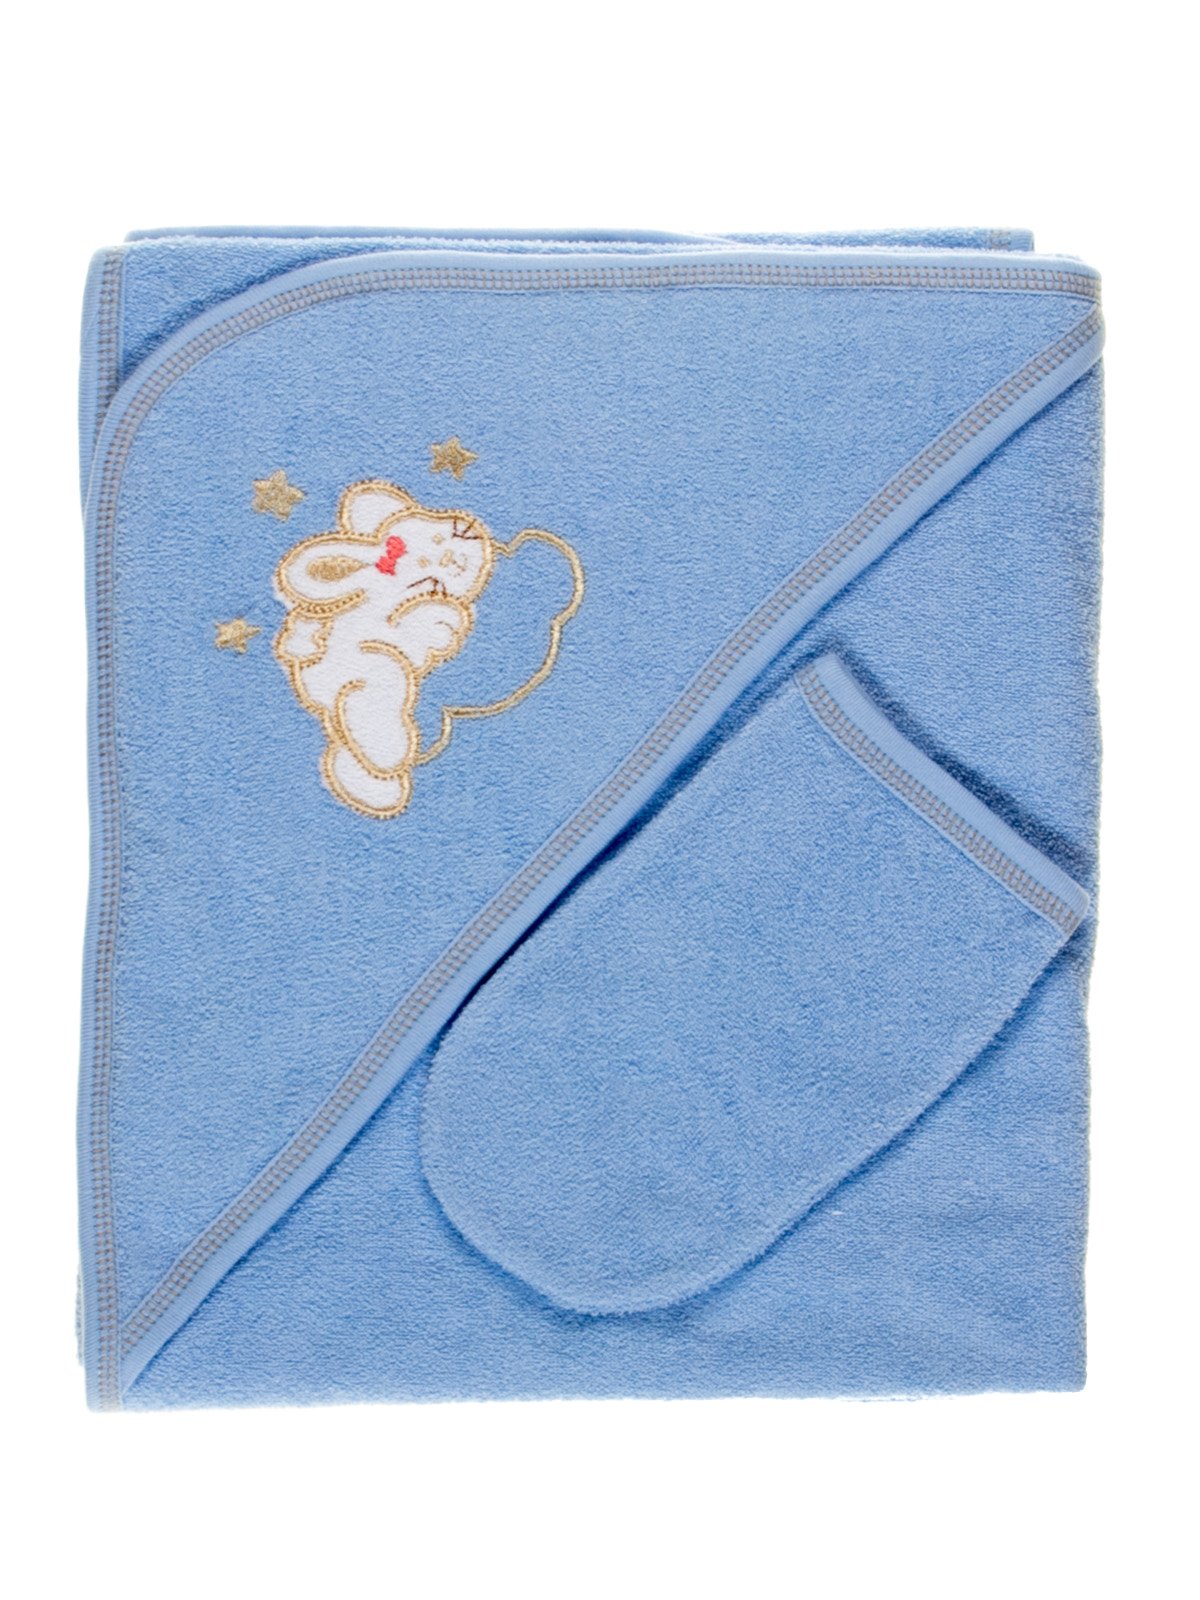 Комплект для купания: полотенце-уголок и рукавичка | 2987642